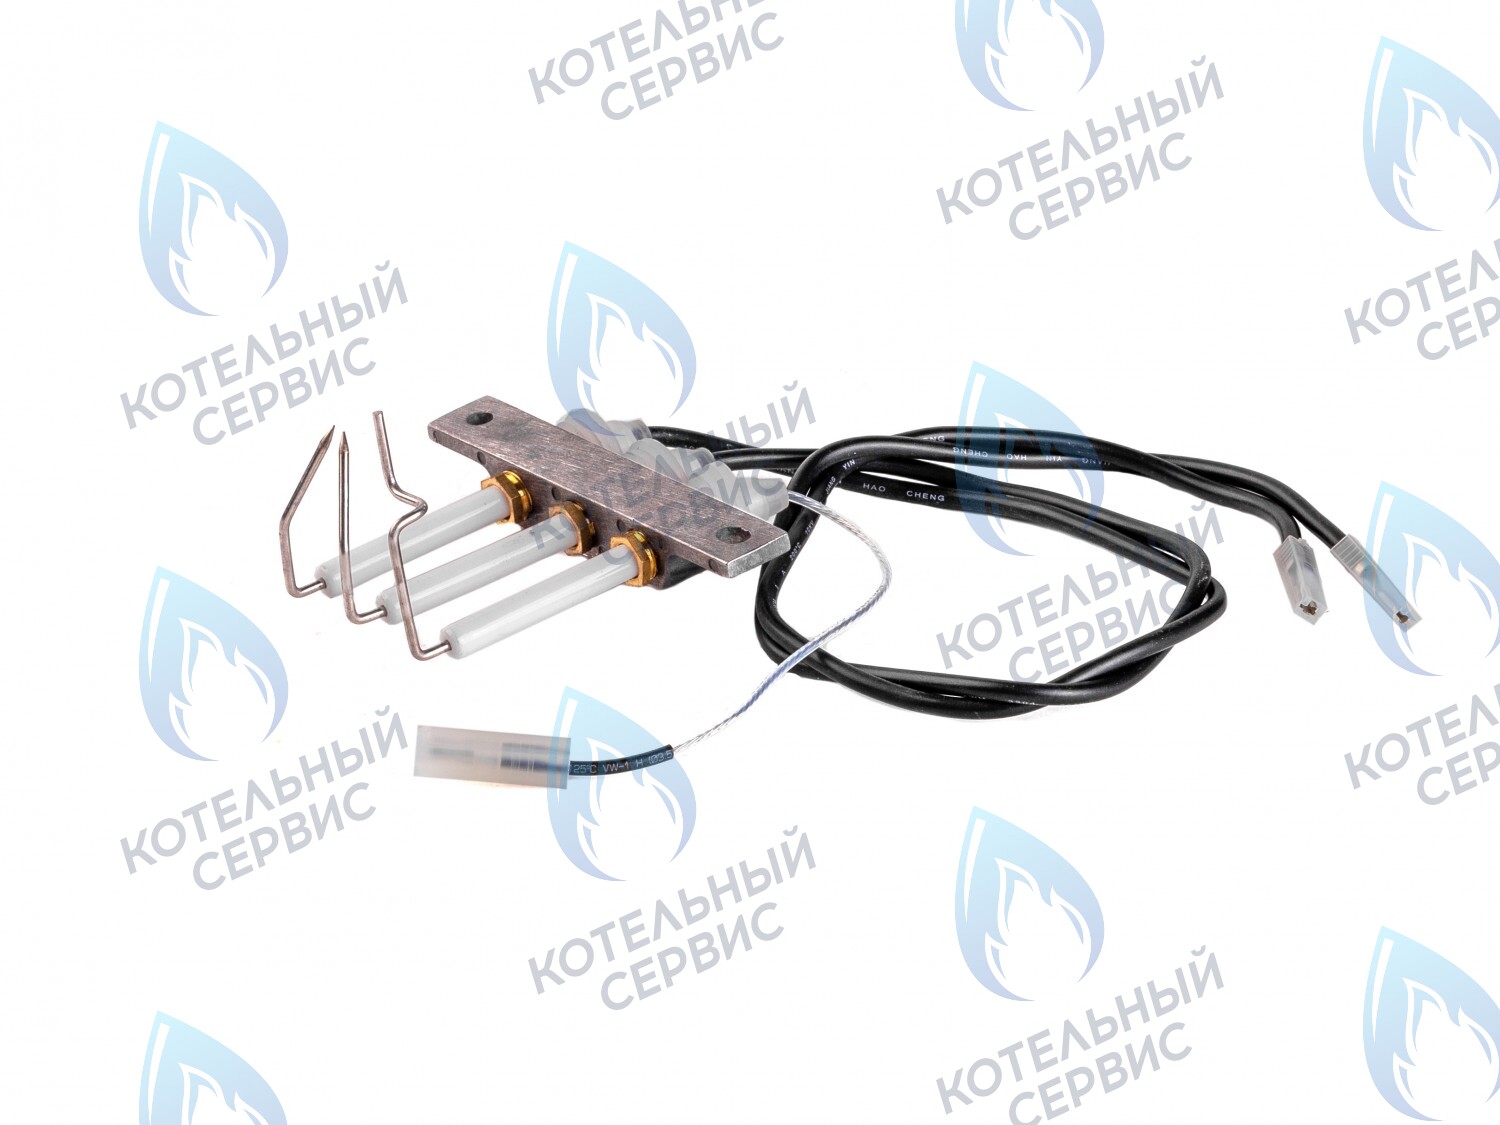  SF Комплект электродов с кабелями, электроды розжига и ионизации  (для GAZLUX, произведенных до 2012 г.) 